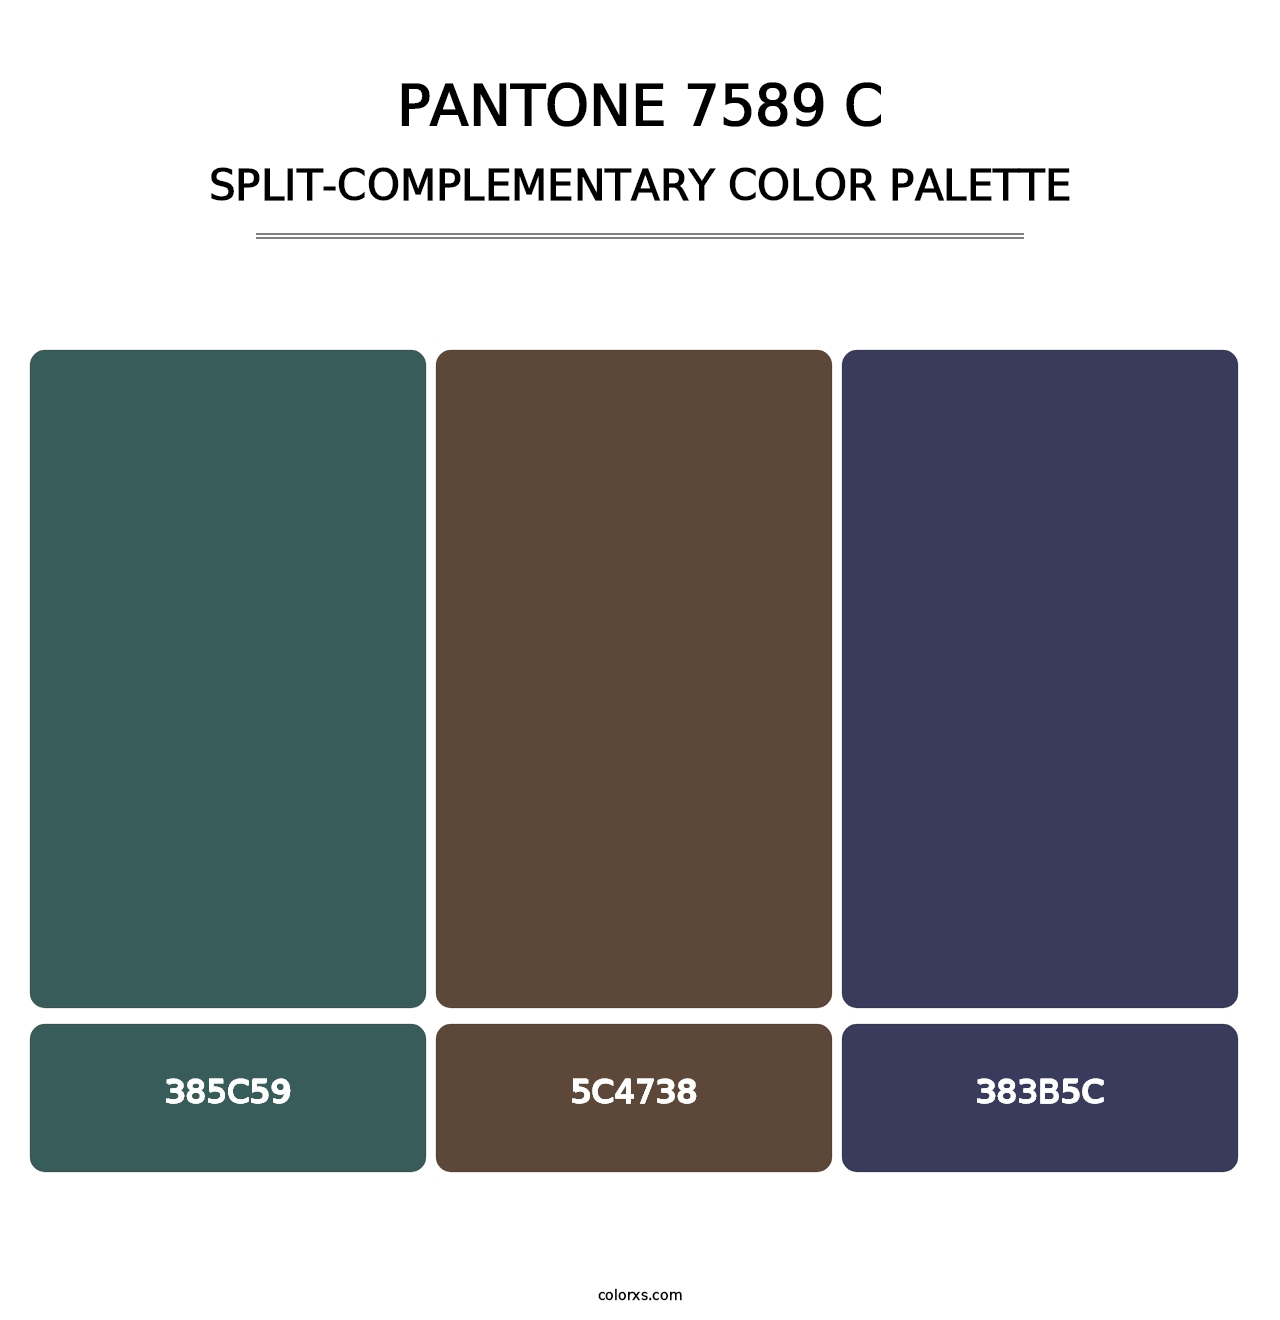 PANTONE 7589 C - Split-Complementary Color Palette